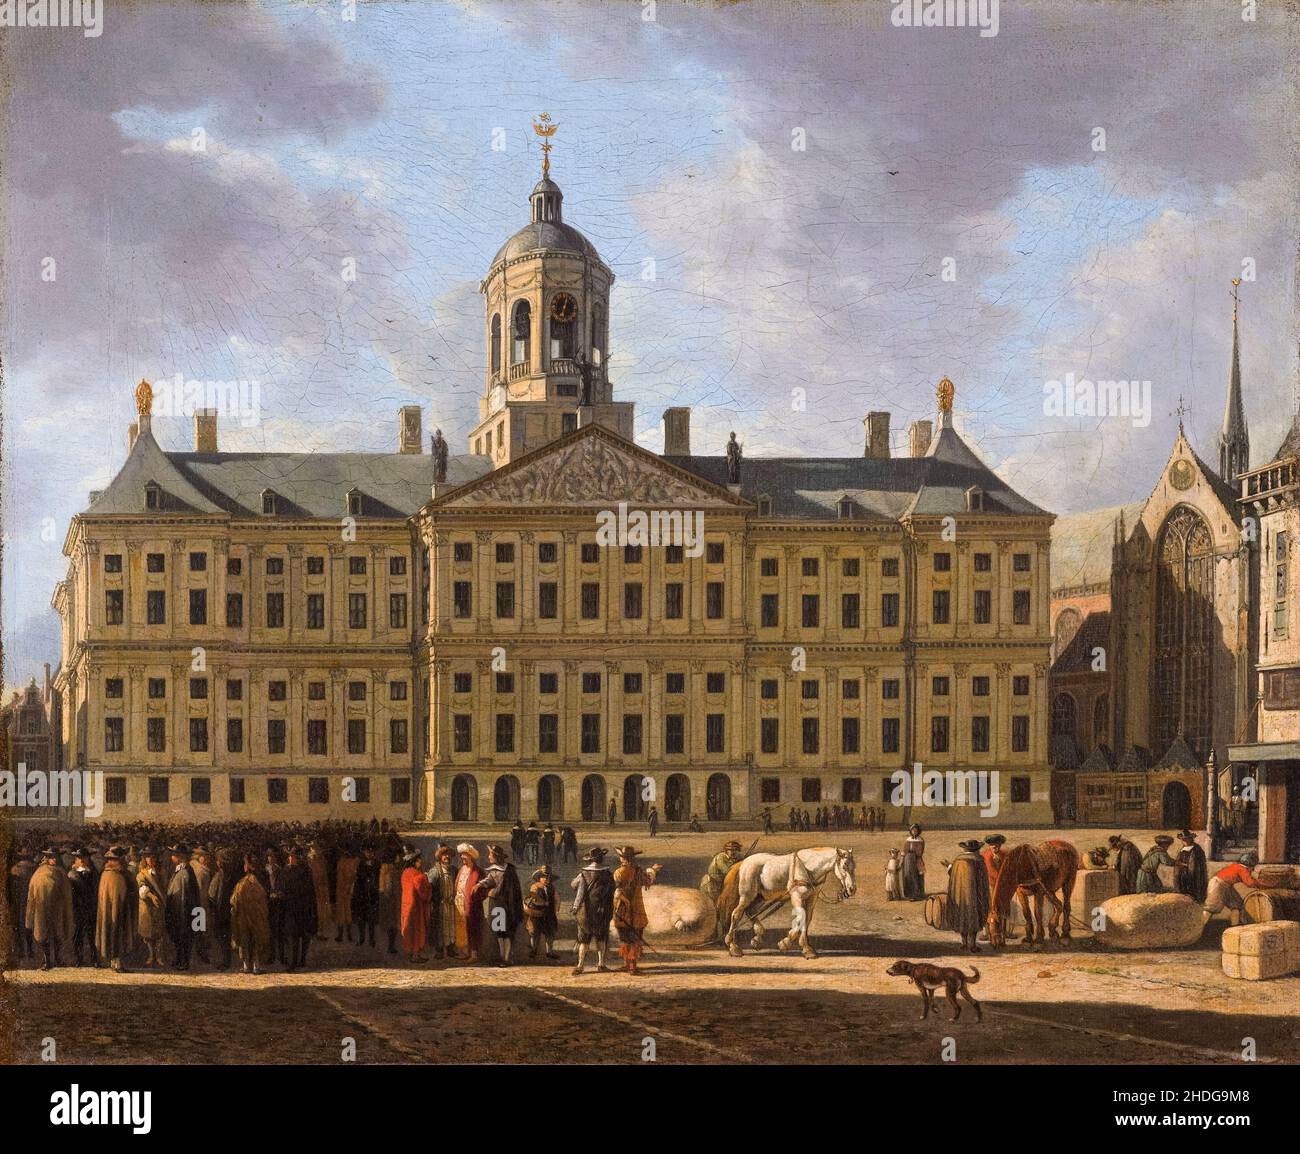 L'hôtel de ville (aujourd'hui le Palais Royal) sur la place du Dam à Amsterdam, peinture de Gerrit Berckheyde, 1672 Banque D'Images